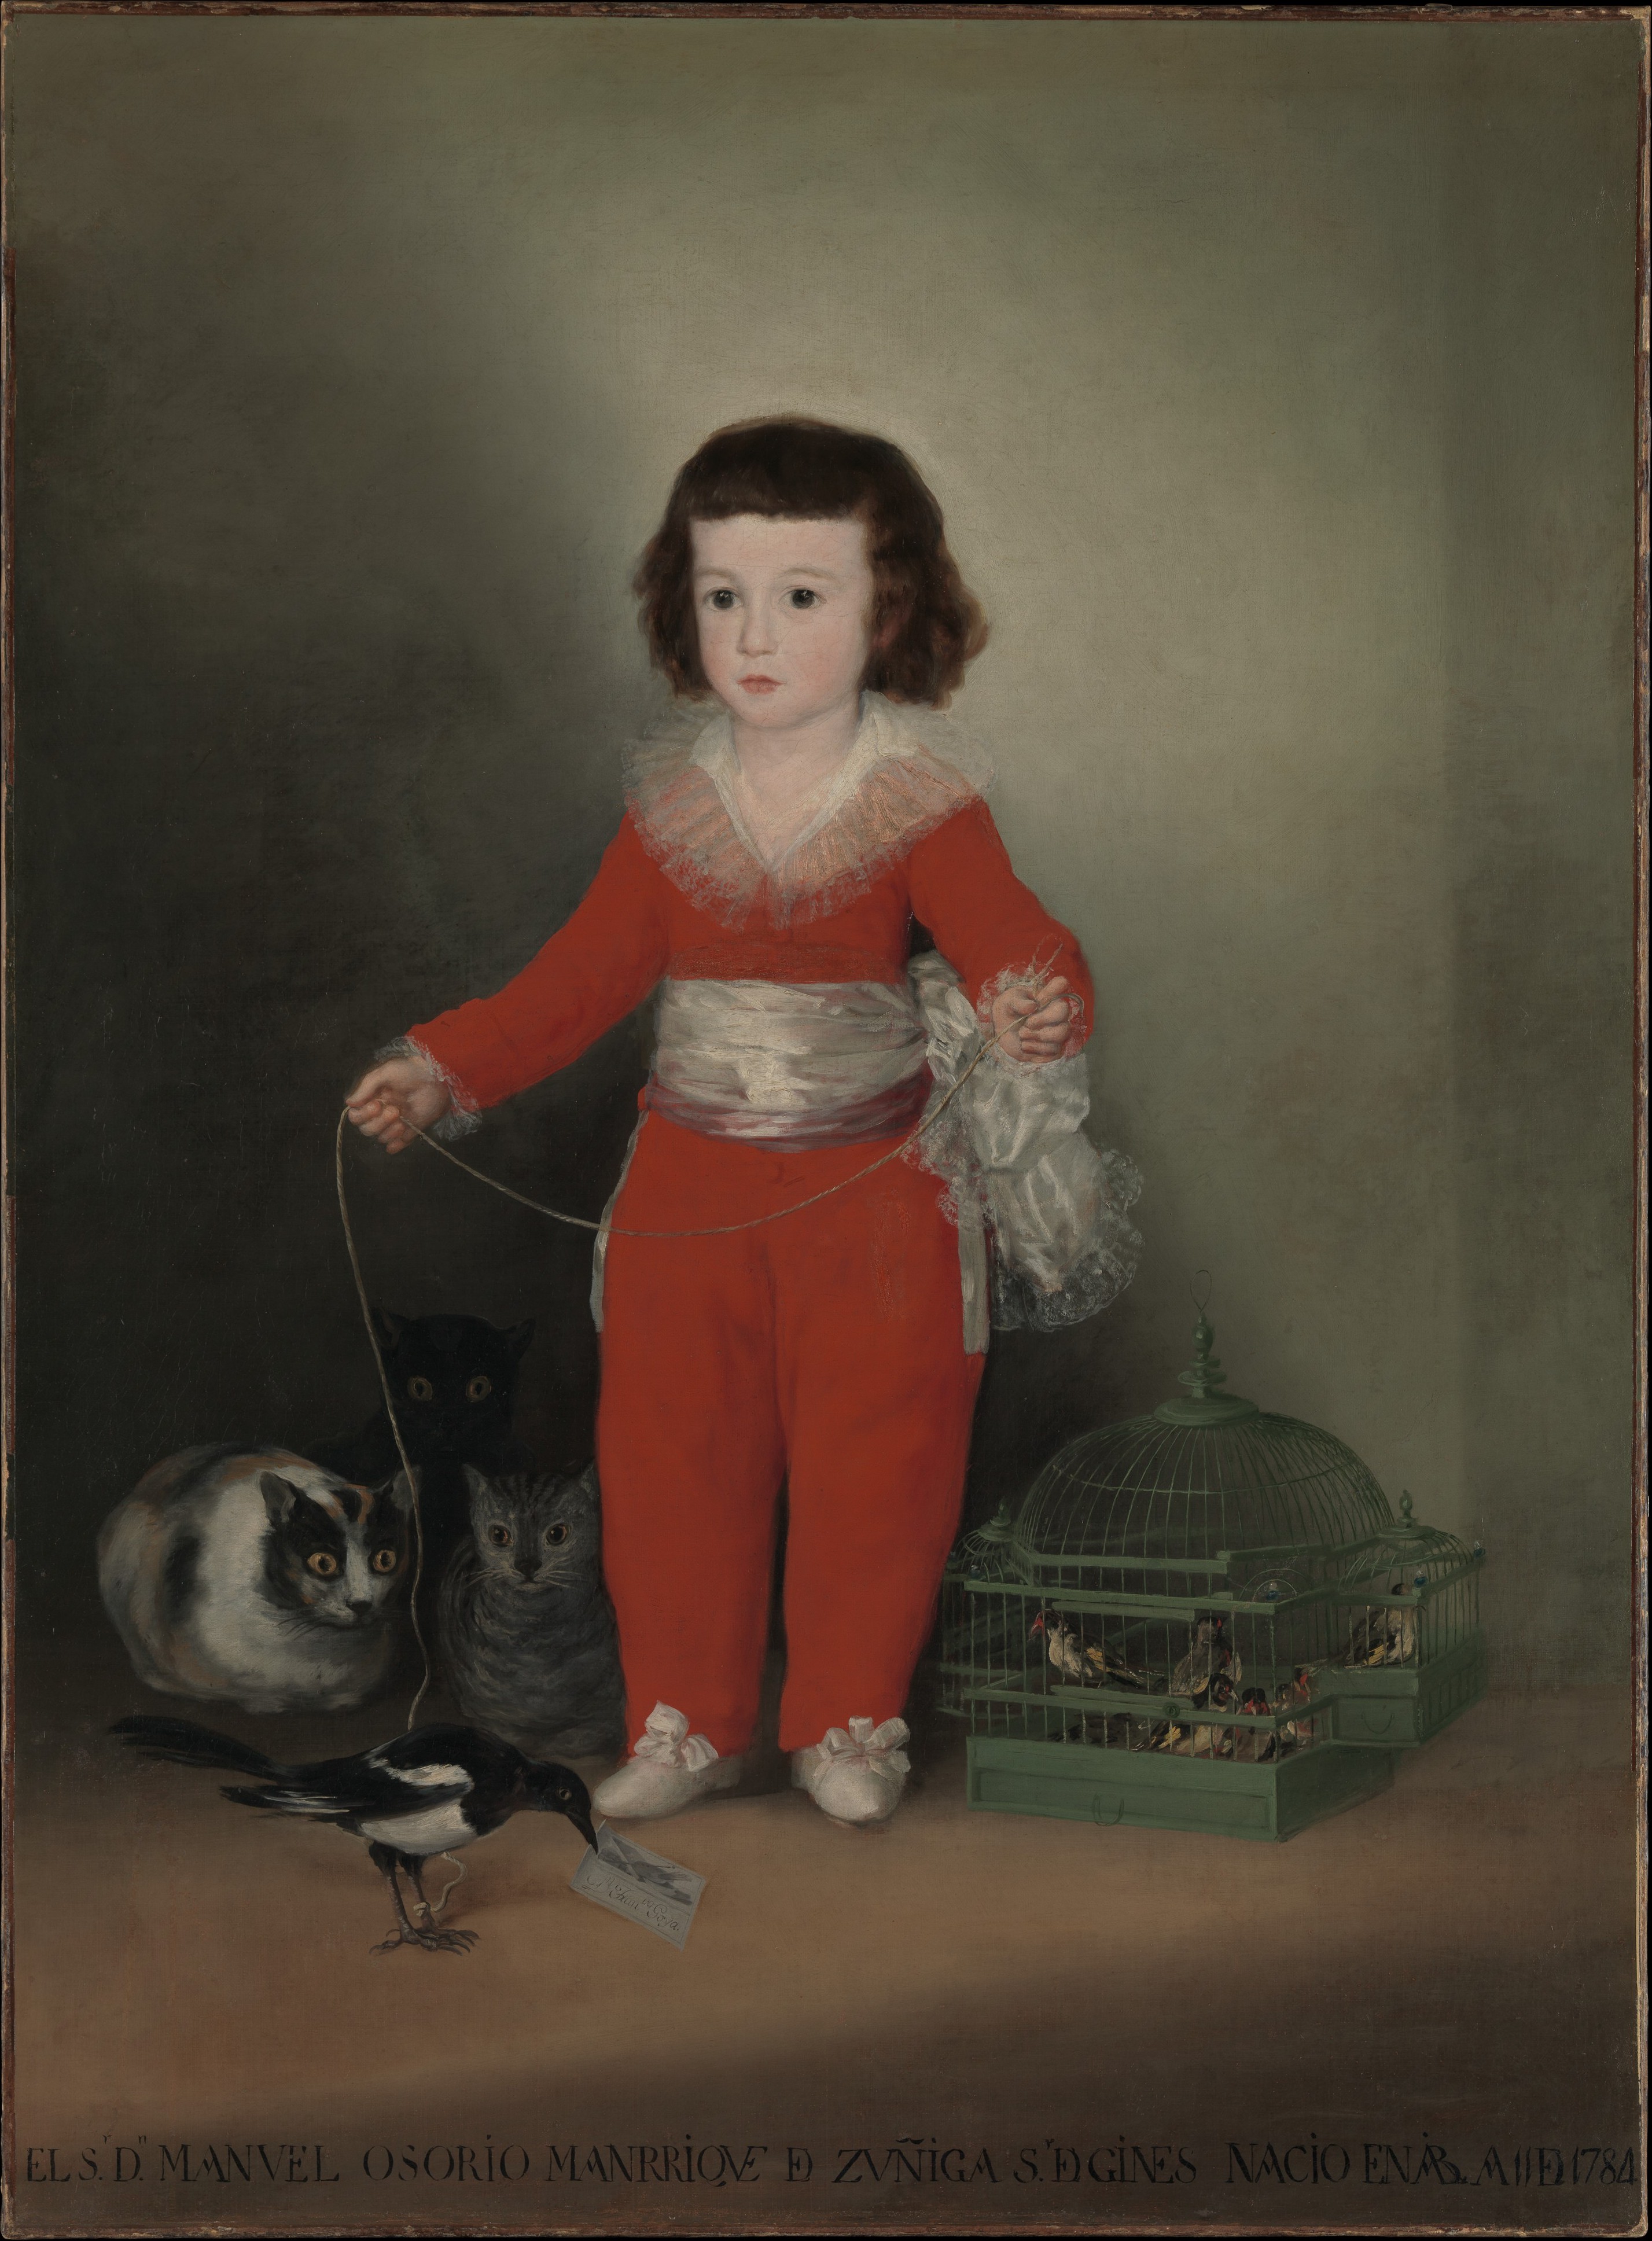 Manuel Osorio Manrique de Zuñiga, enfant by Francisco Goya - 1787–88 - 127 x 101,6 cm Metropolitan Museum of Art